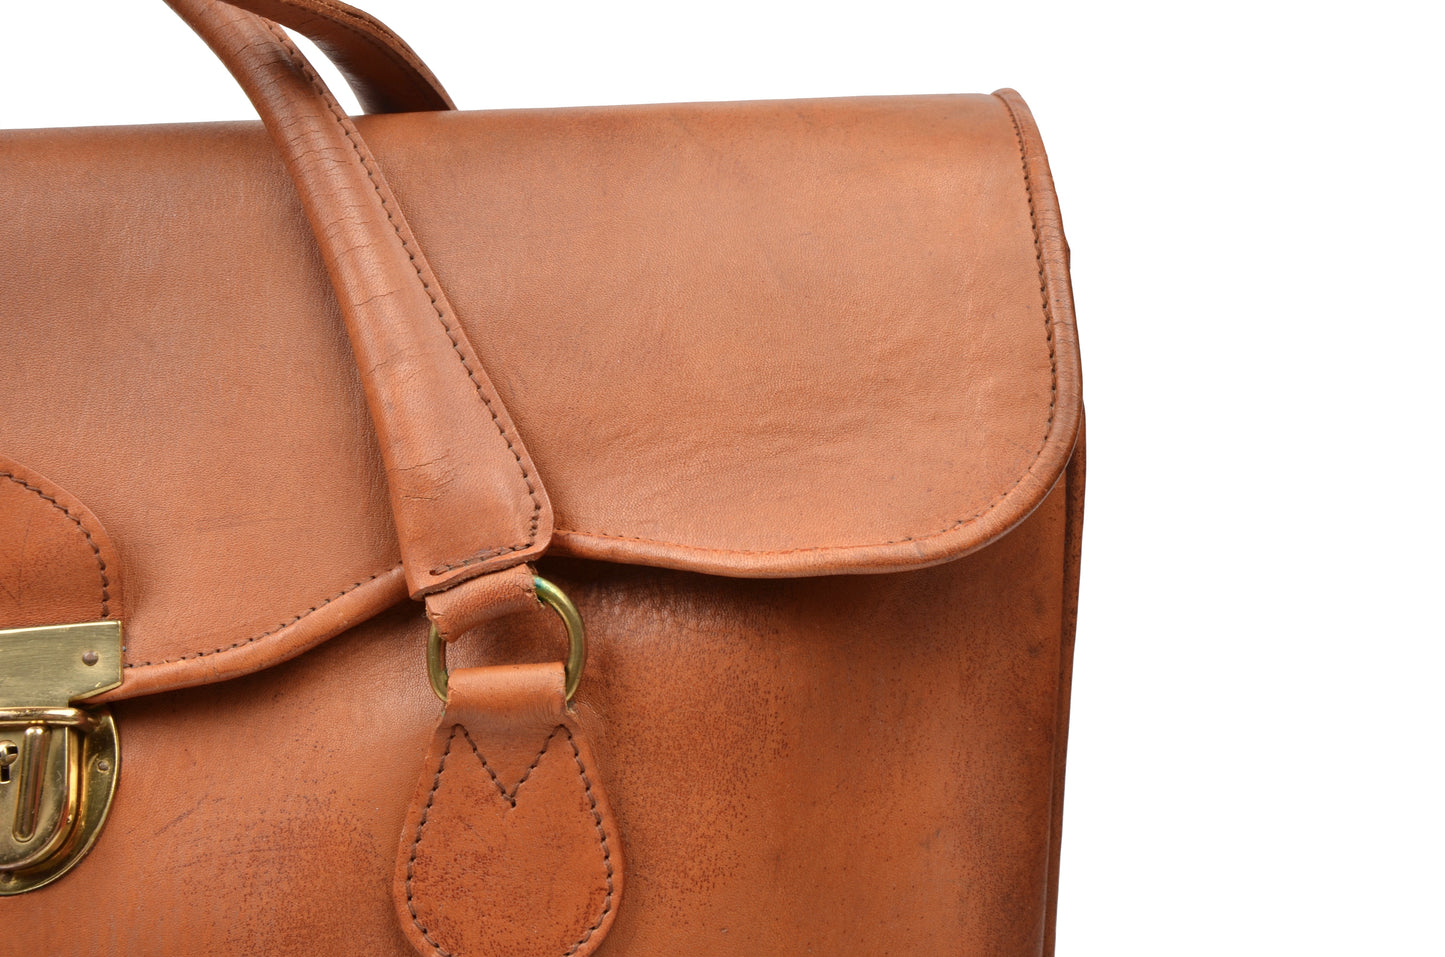 Vintage Leather Weekender Bag - Tan